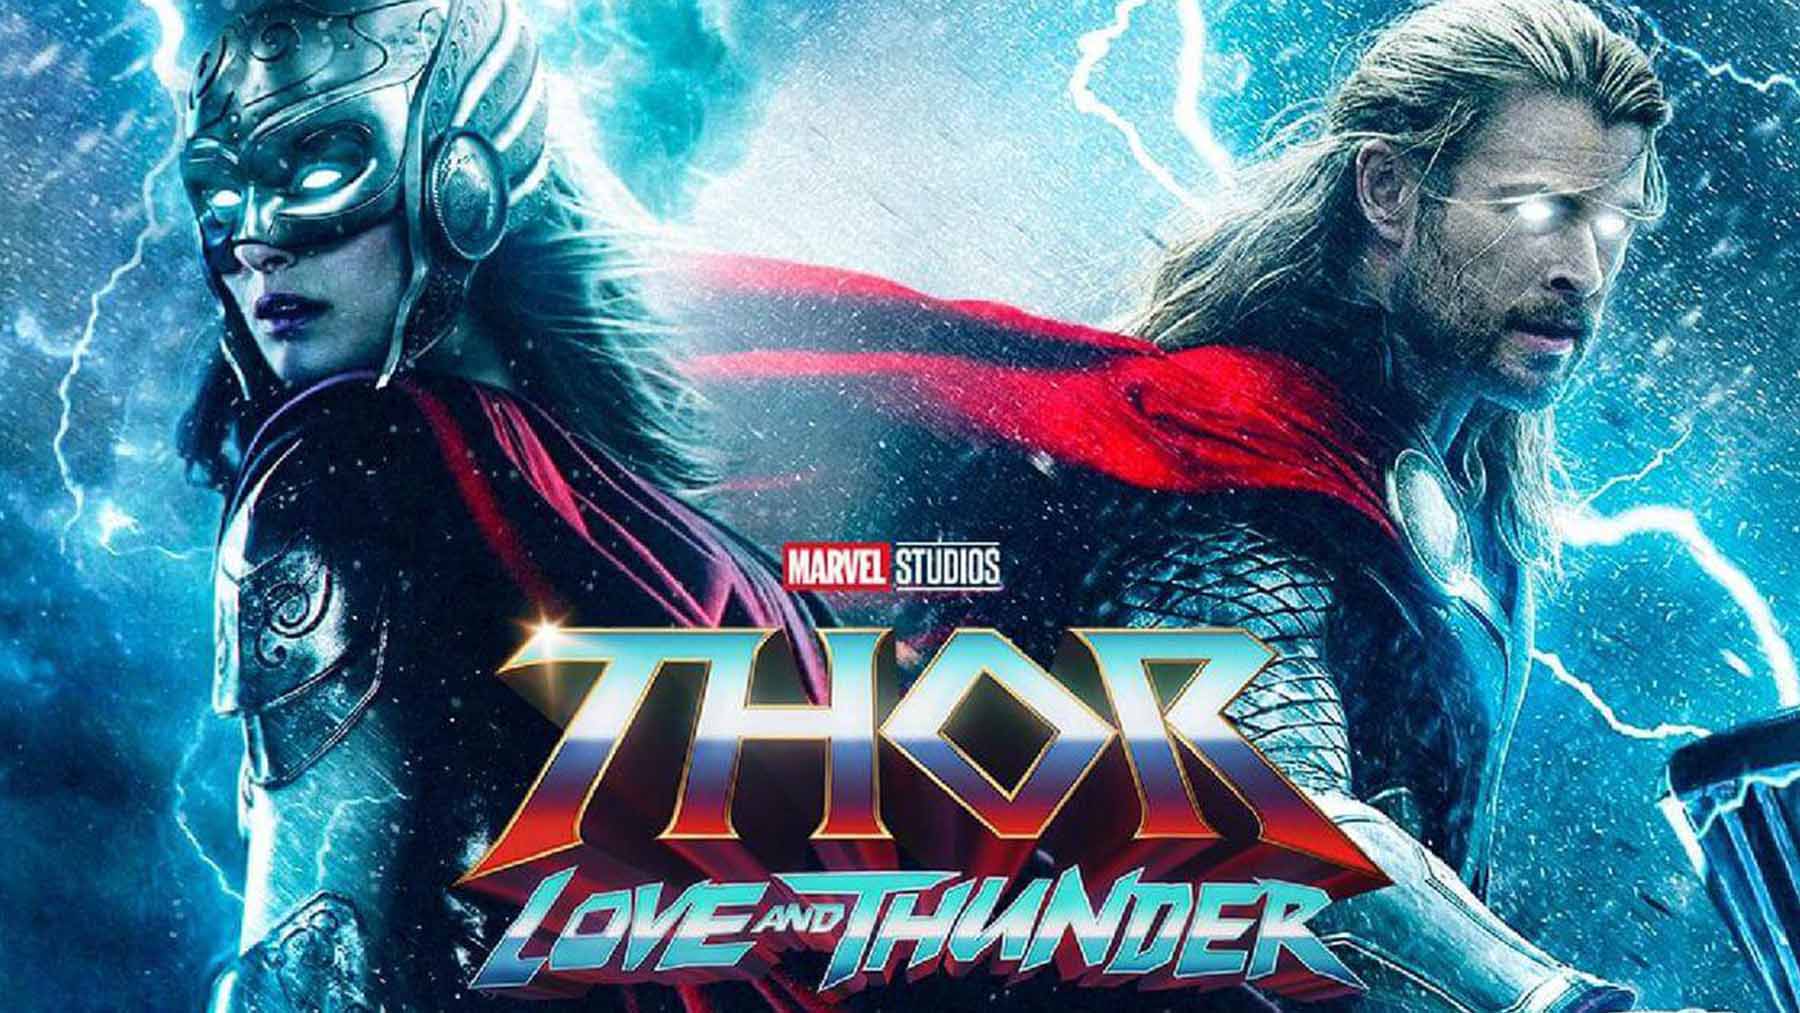 Marvel muestra un sincero homenaje al Dios del trueno para promocionar ‘Thor: Love and thunder’